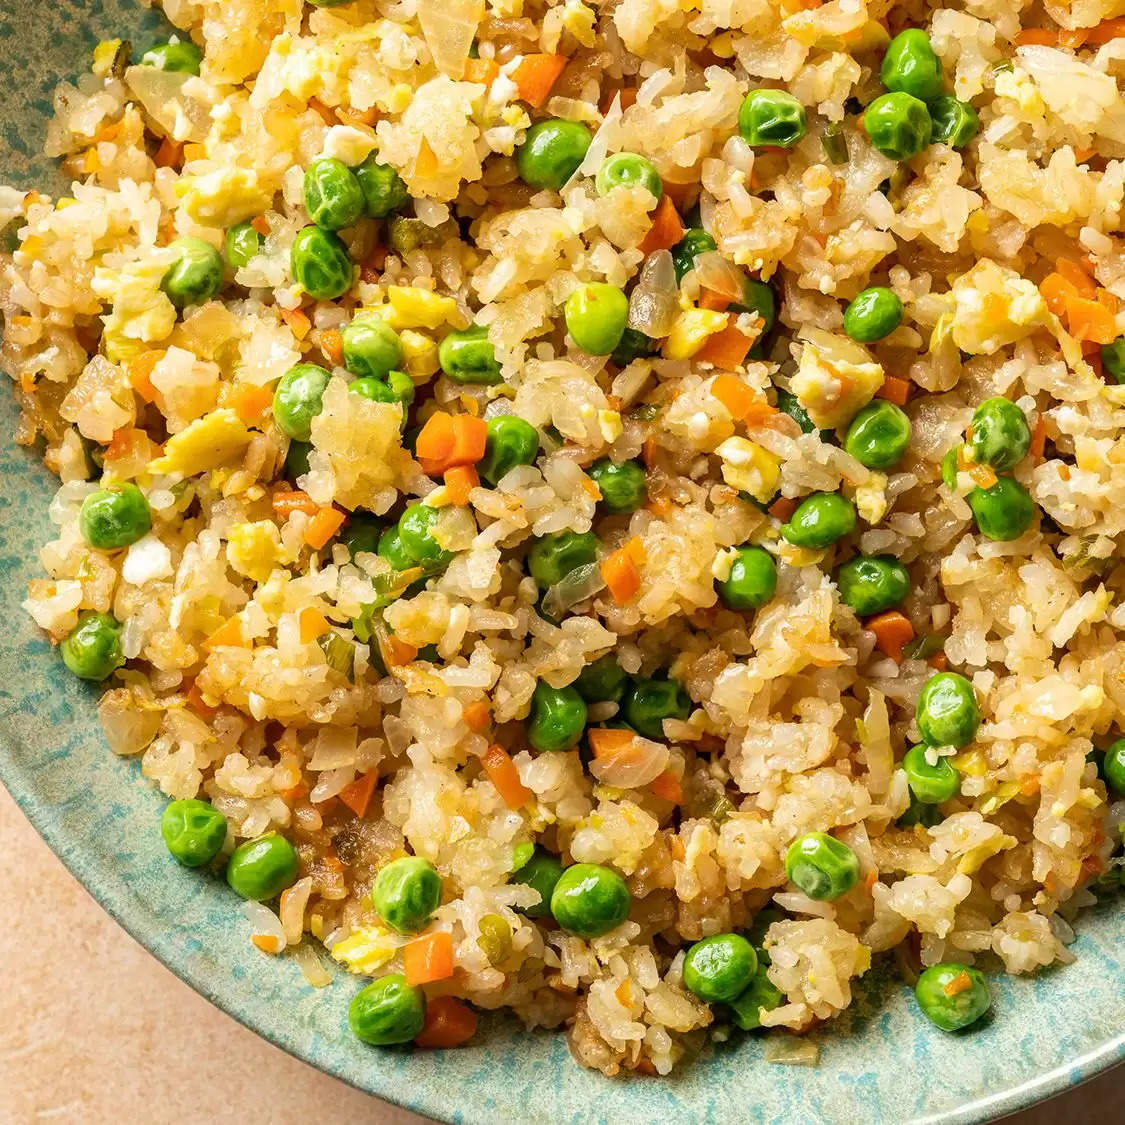 Food Reciepe: बचे हुए चावलों को न फेंके ख़राब समझ बनाएं टेस्टी Fried Rice